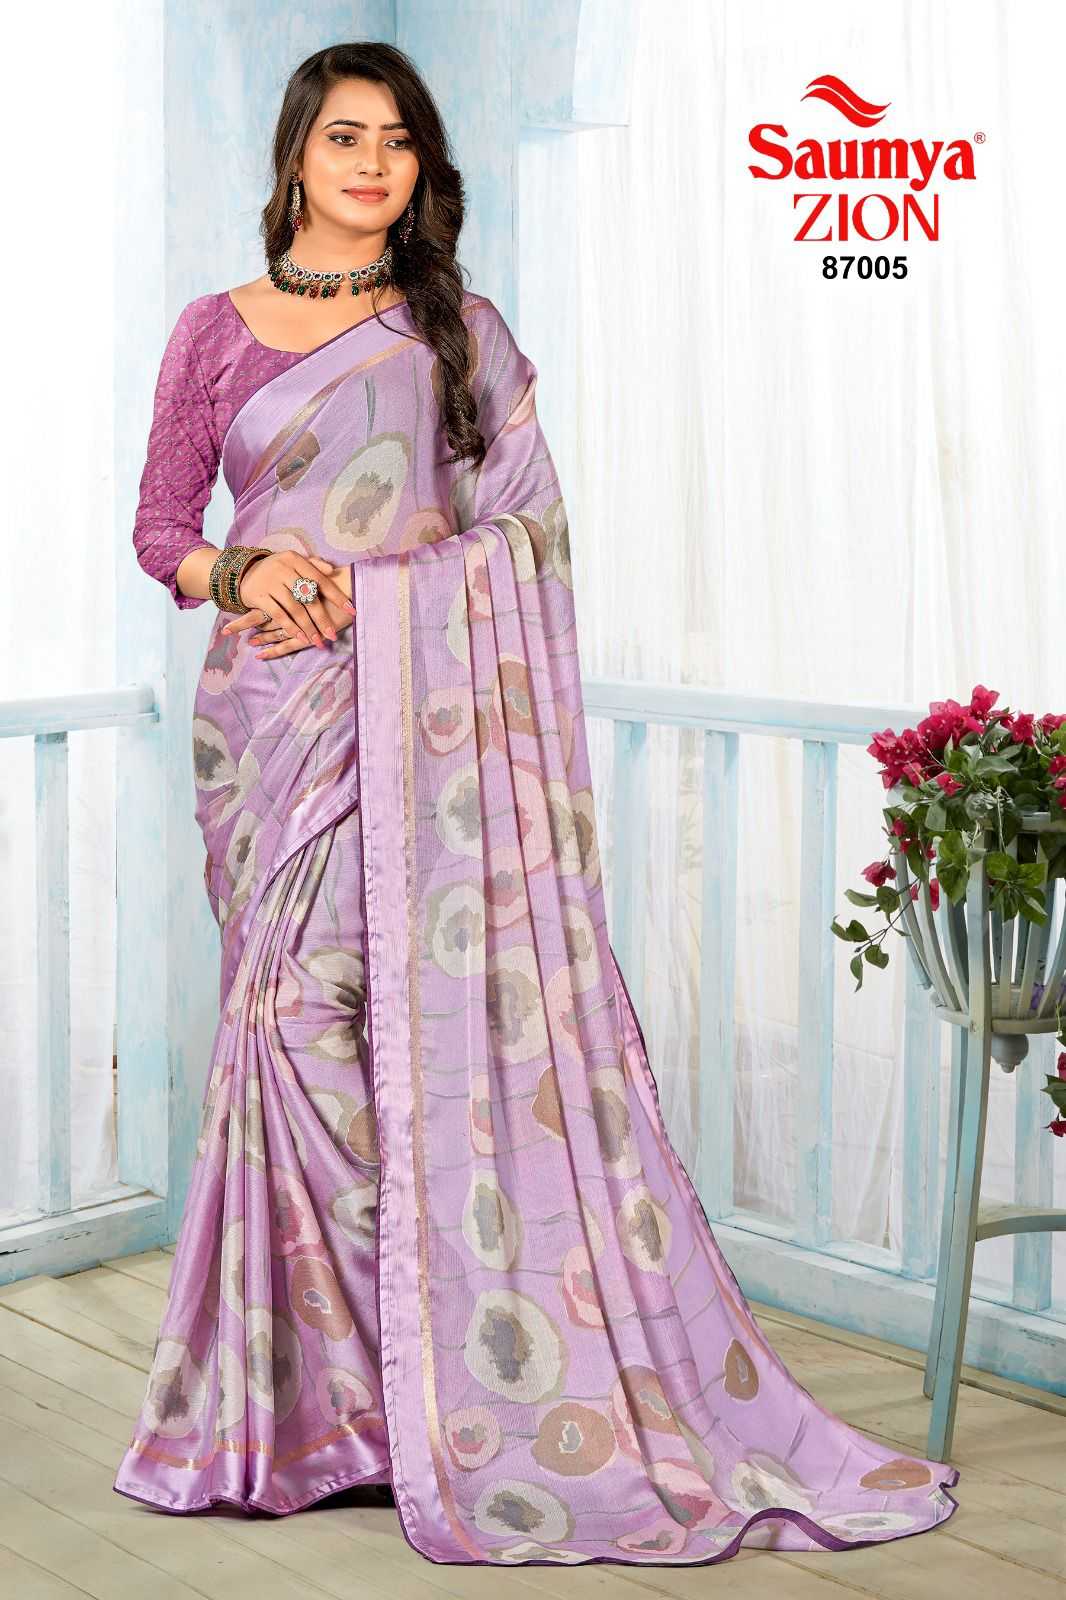 saumya zion 87001-87008 beautiful casual wear sarees 